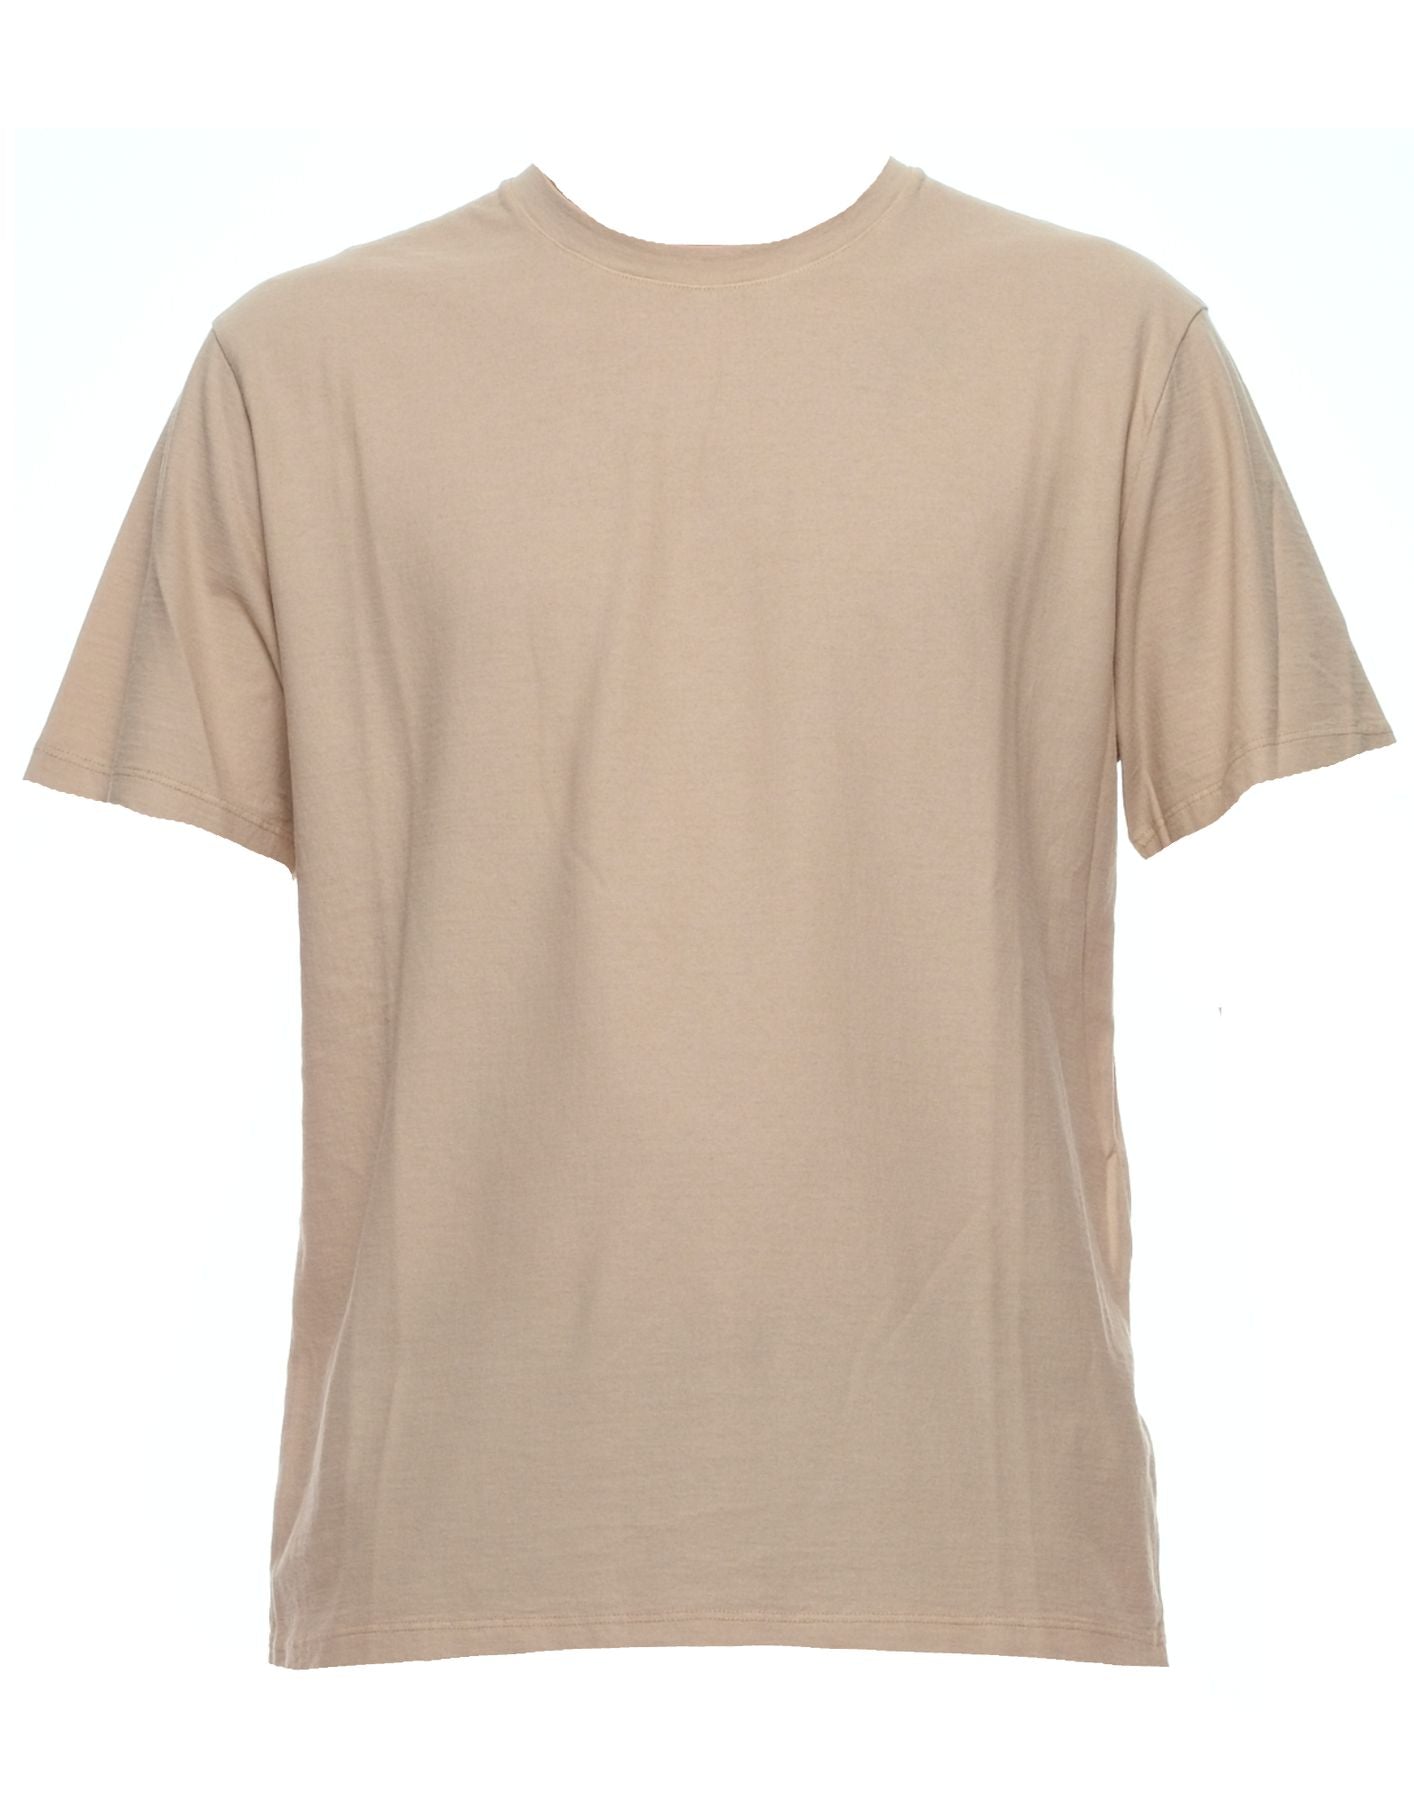 T-shirt pour l'homme pe24afu61 beige Atomofactory